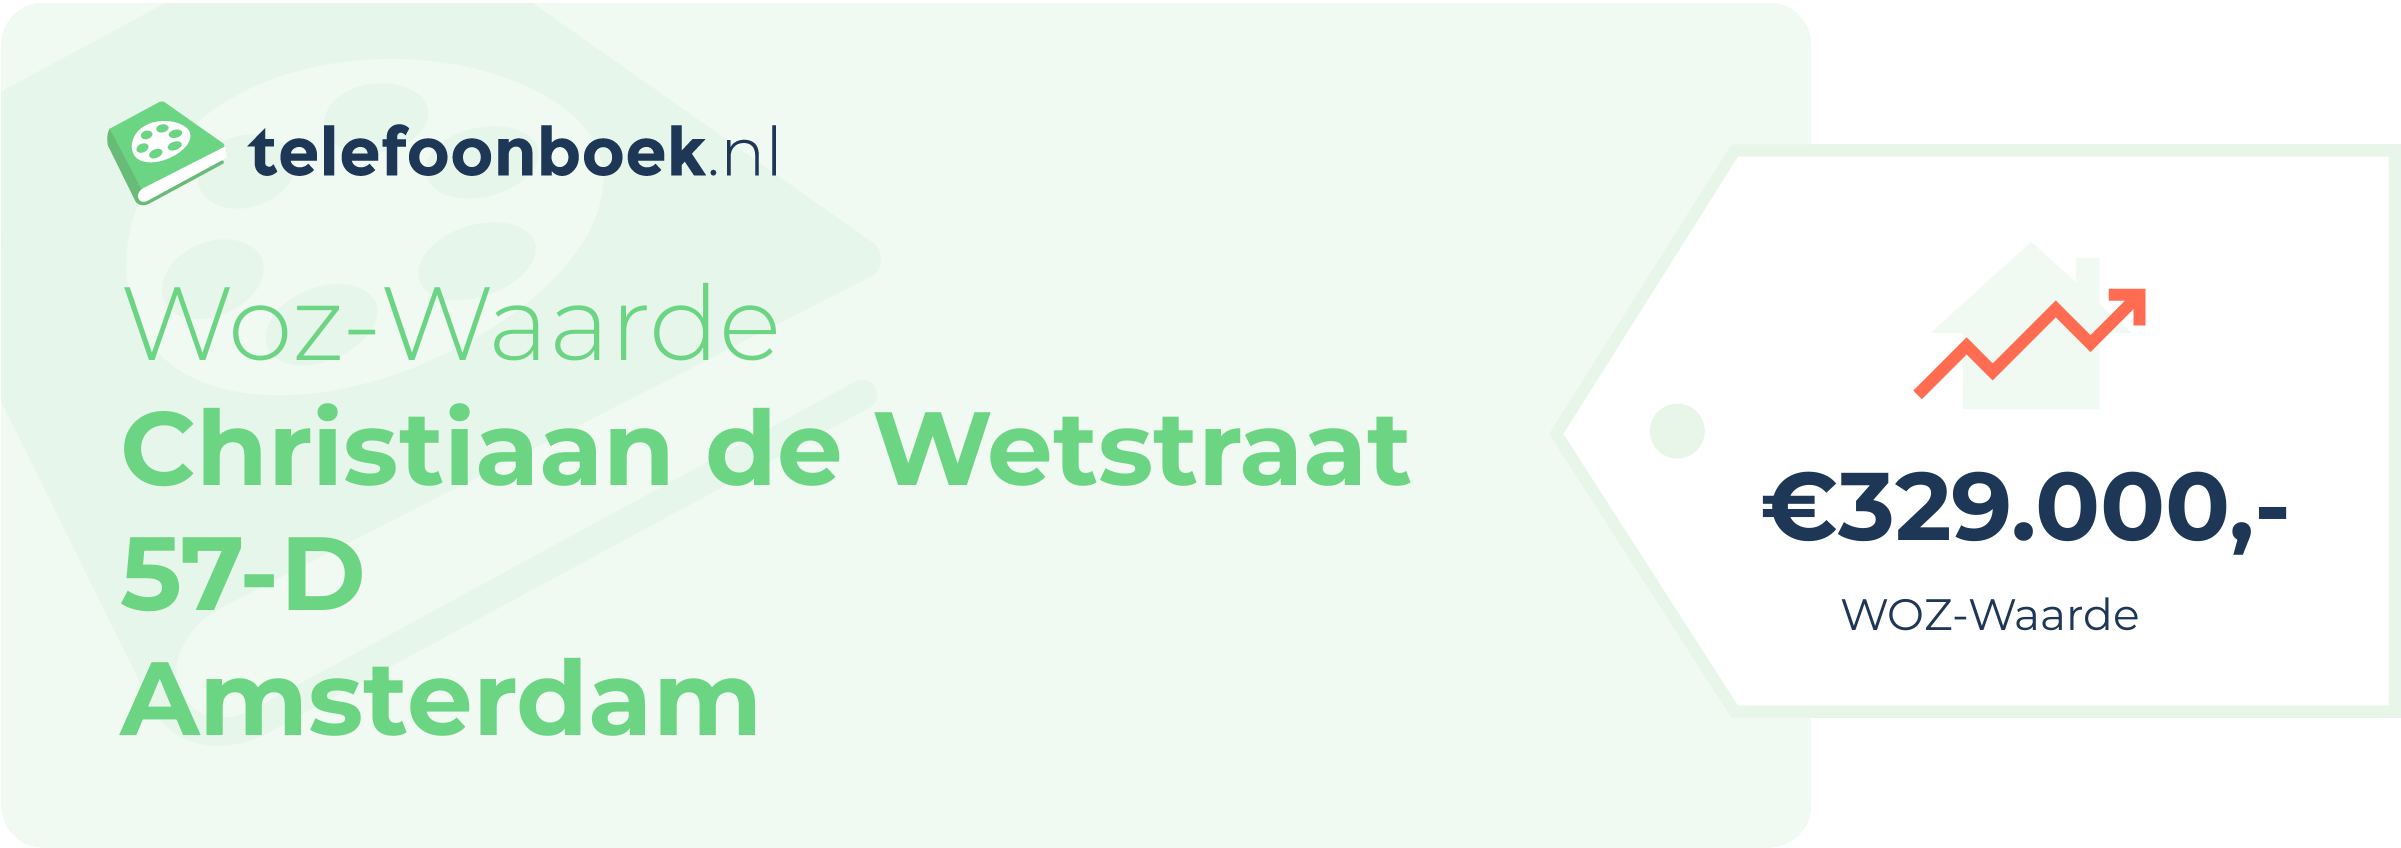 WOZ-waarde Christiaan De Wetstraat 57-D Amsterdam